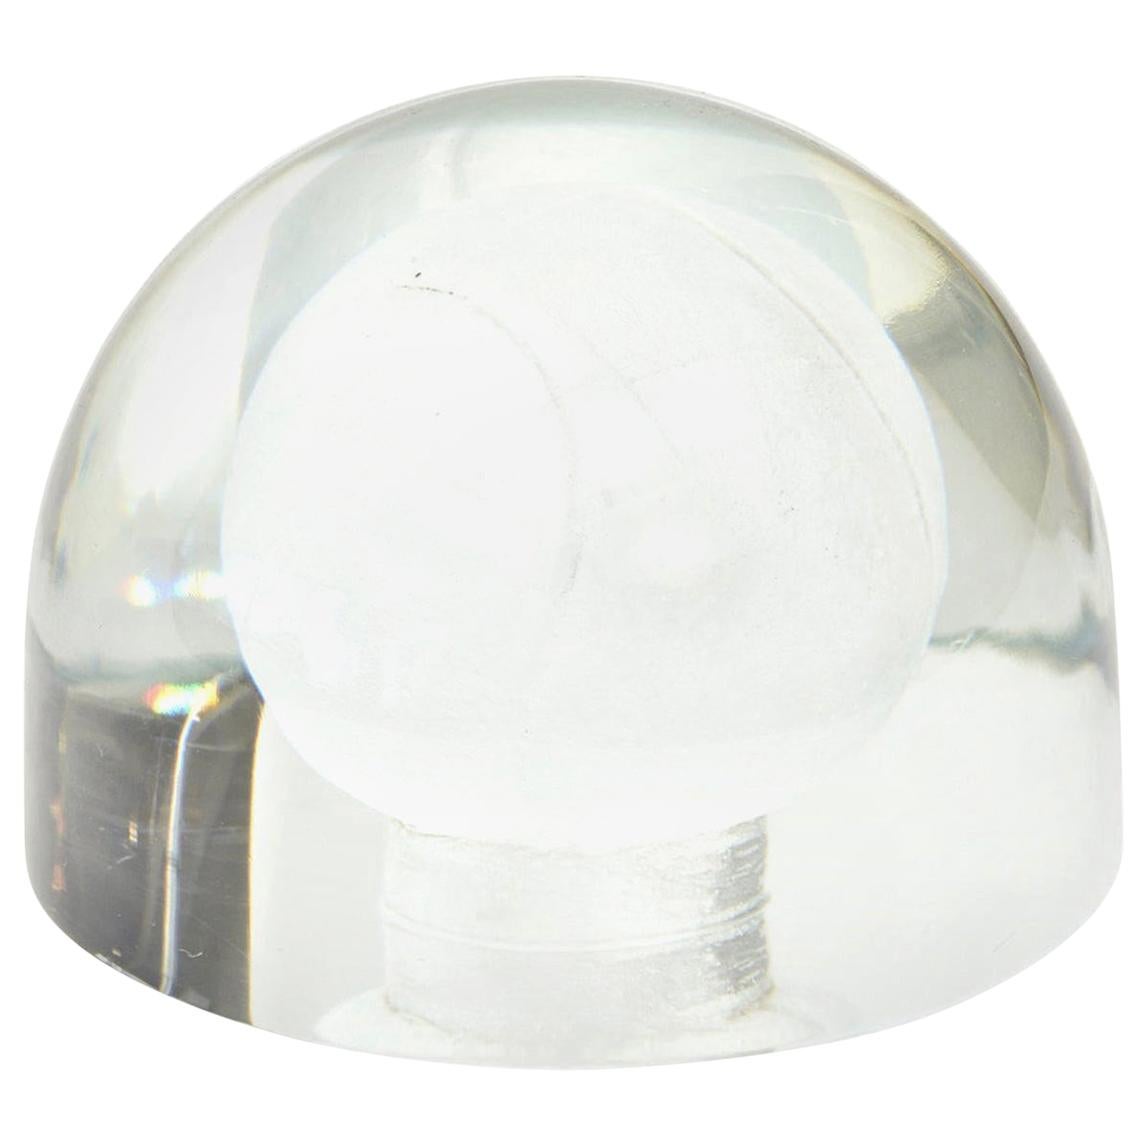 Glass Embedded Tennis Ball Paperweight Sculpture Desk Accessory